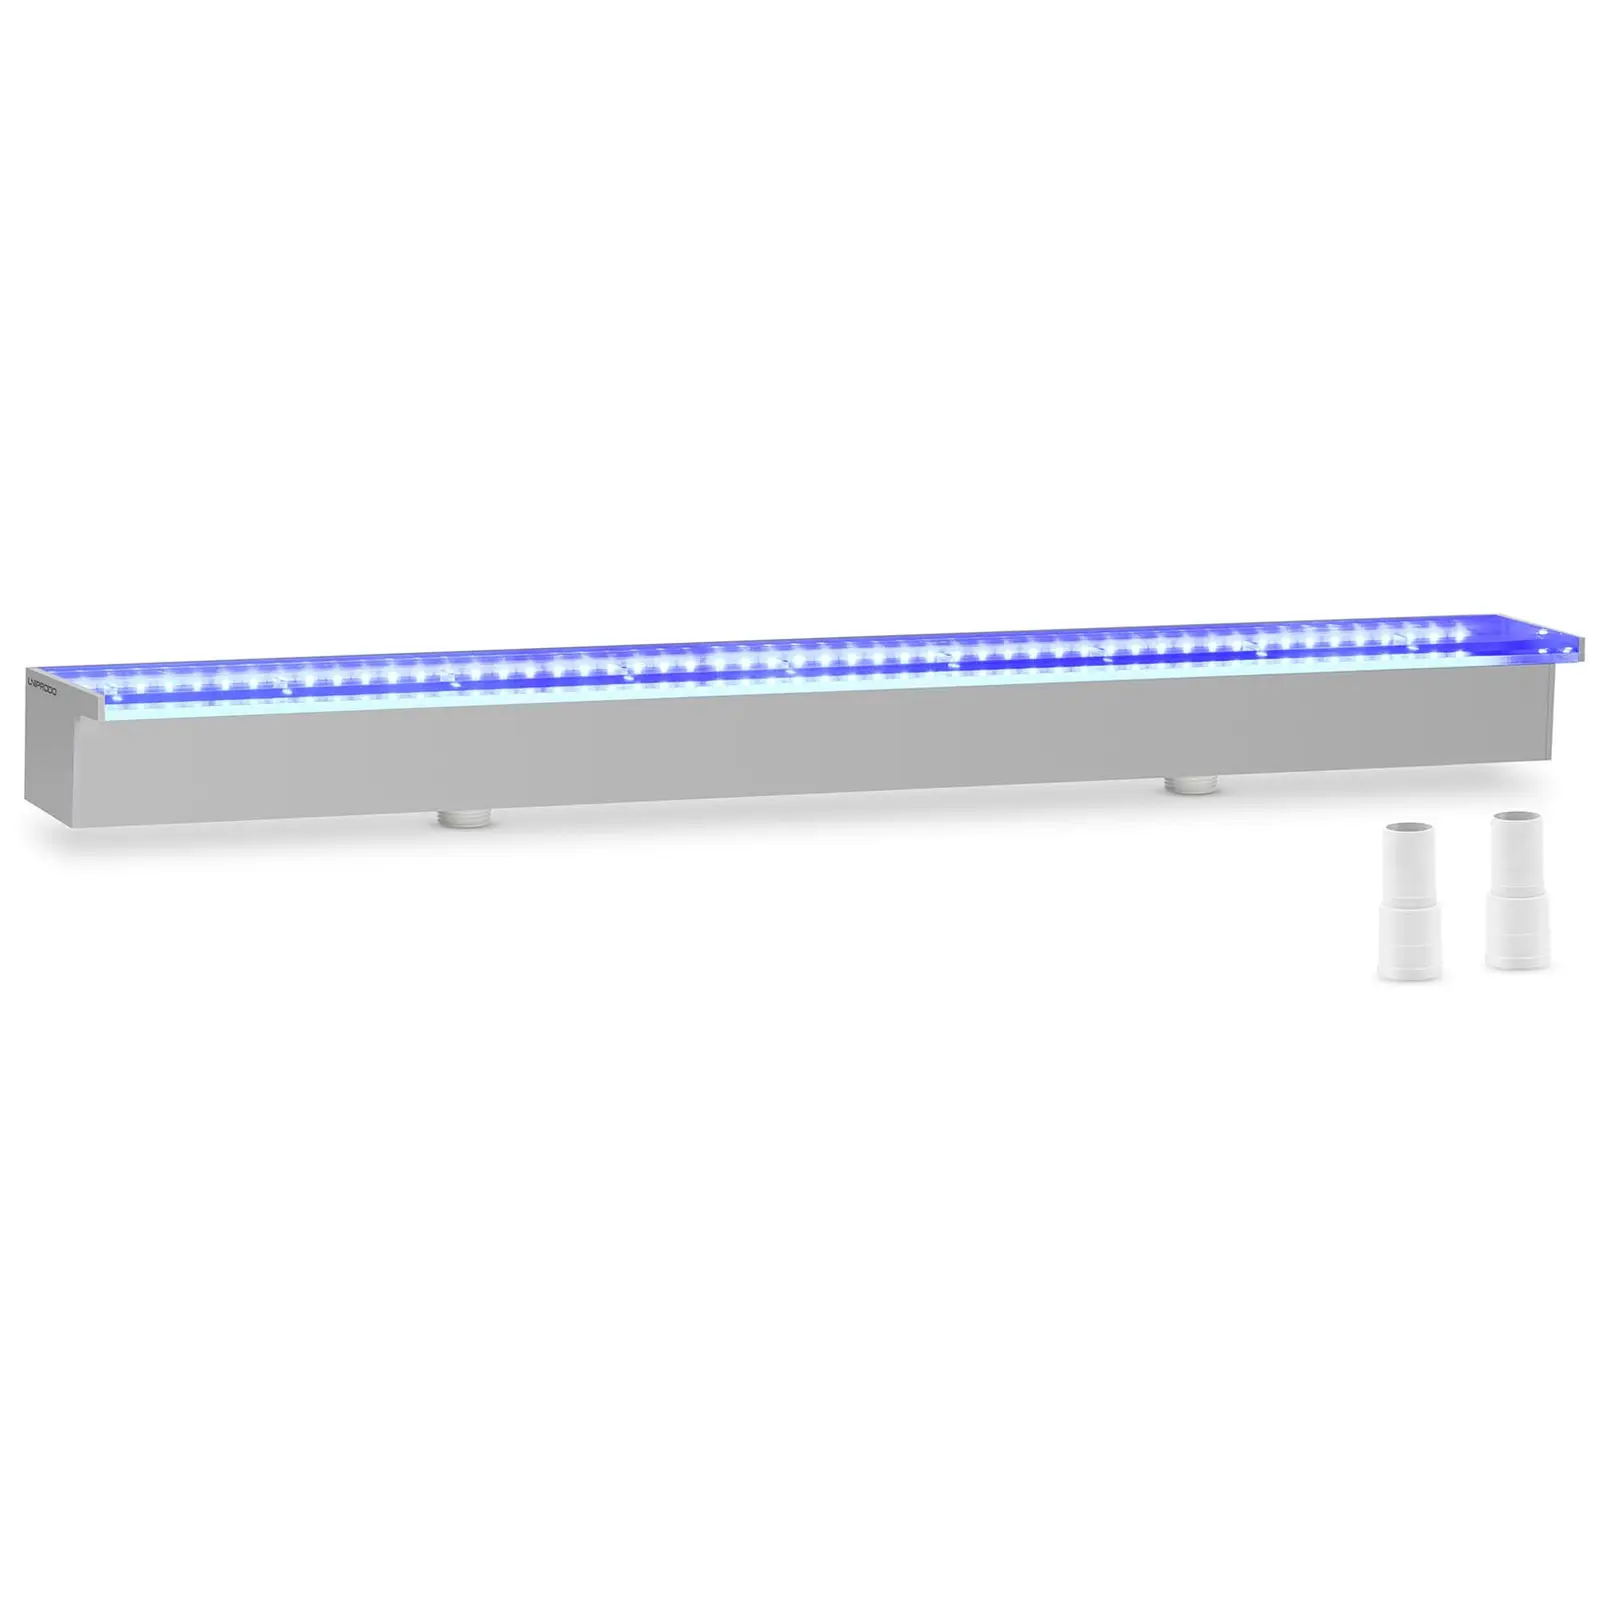 Medence szökőkút - 90 cm - LED világítás - kék/fehér - 30 mm-es vízkivezető nyílás